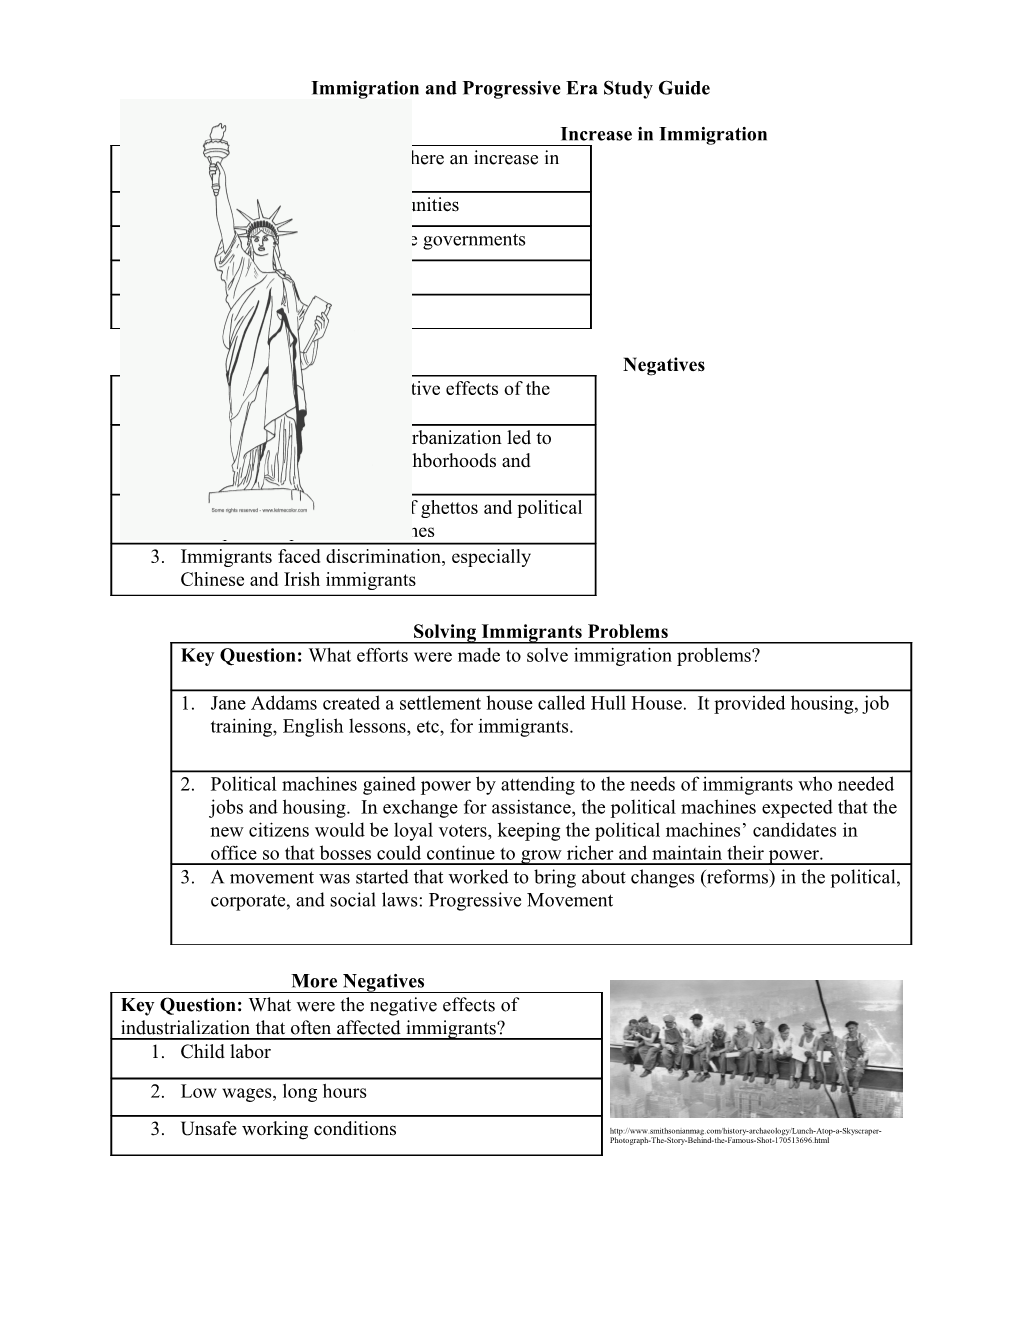 Immigration and the Progressive Era Study Guide #4